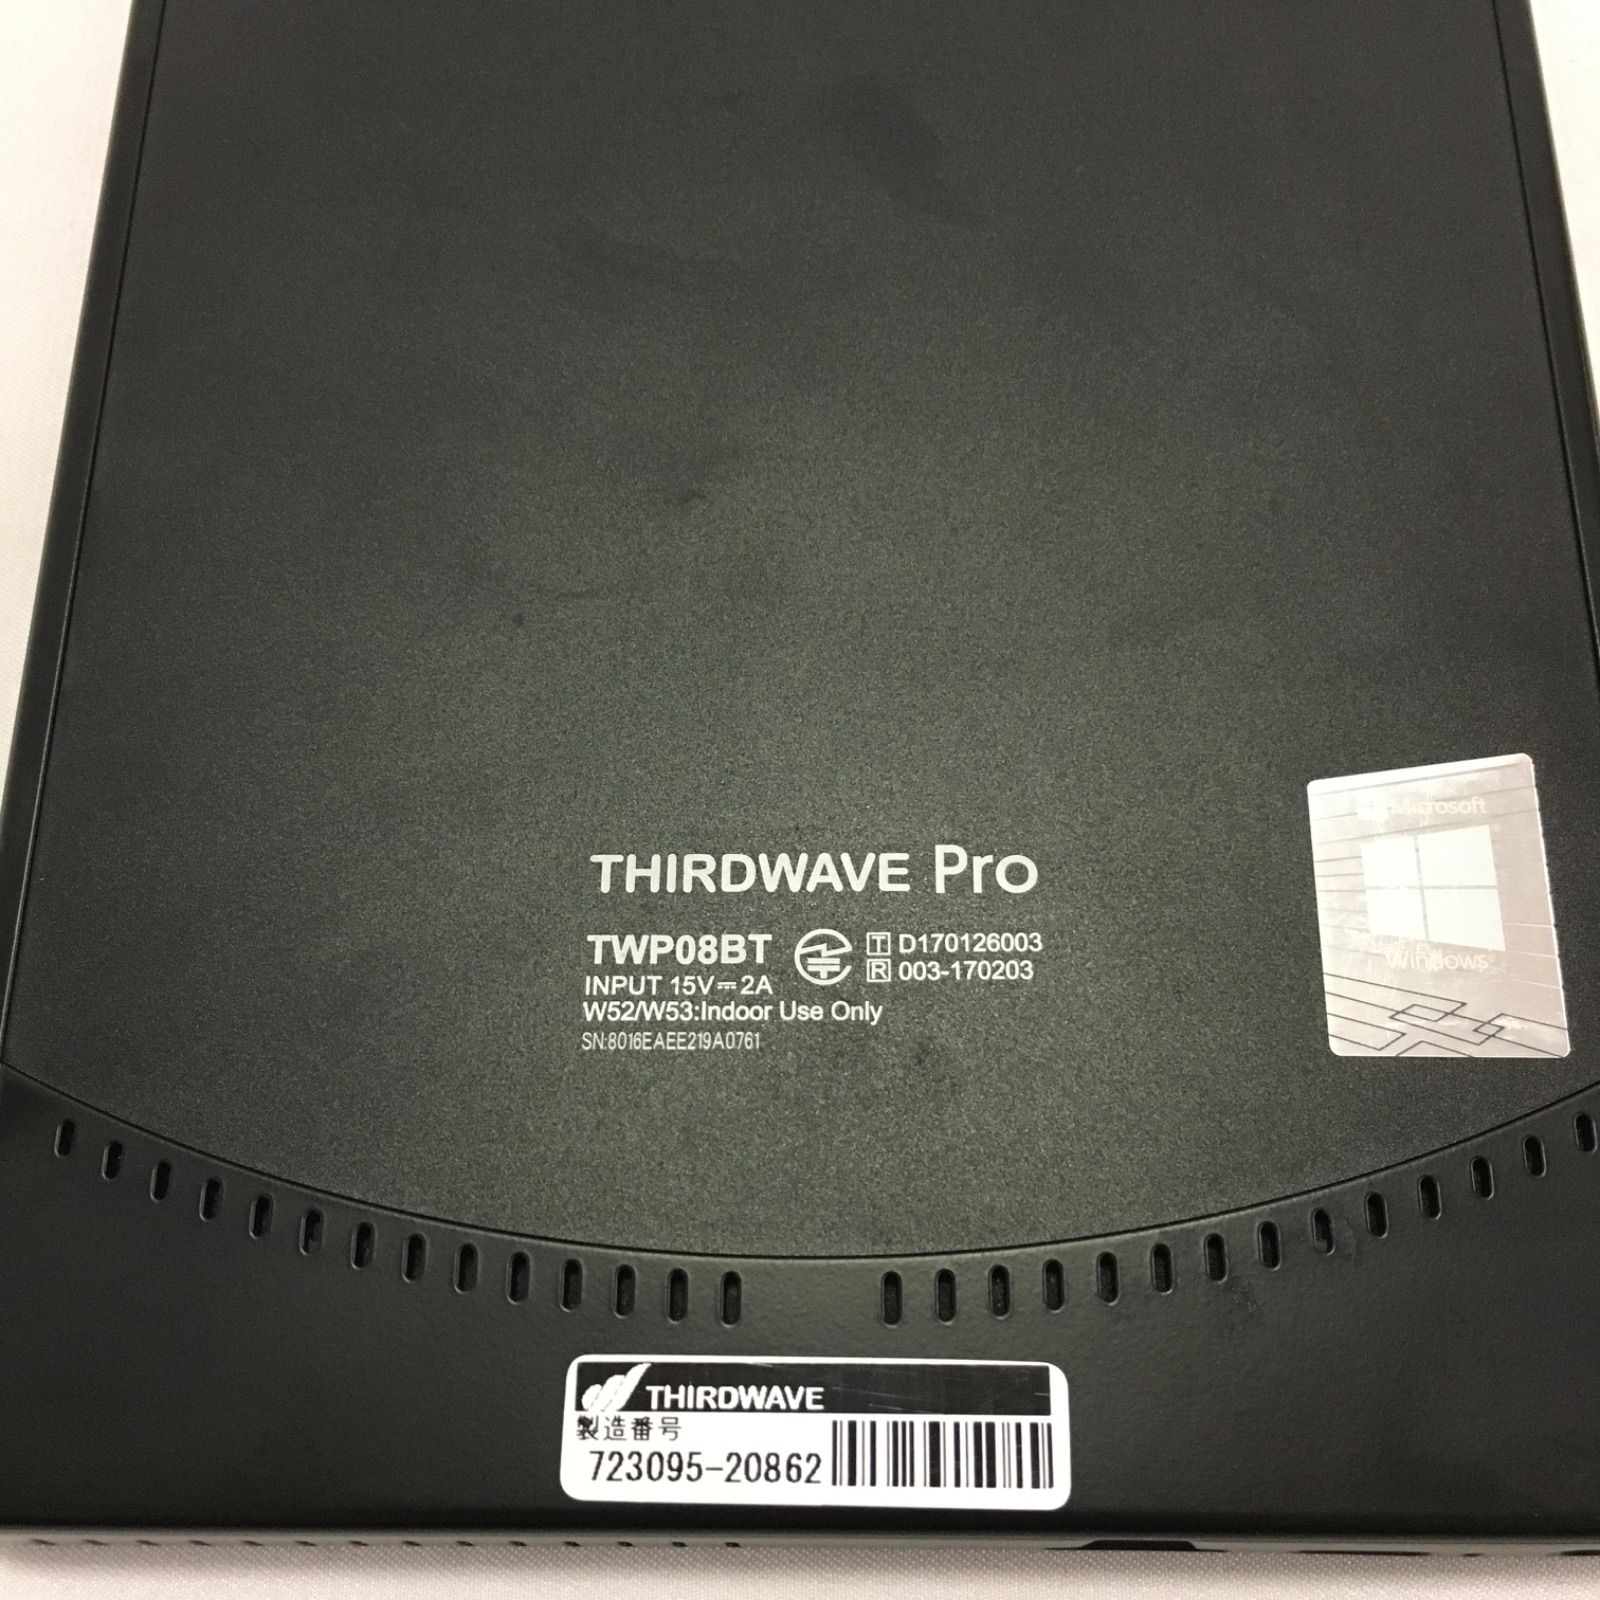 く日はお得♪ THIRDWAVE ドスパラ【公式】 Pro THIRDWAVE TWP10BT on ...